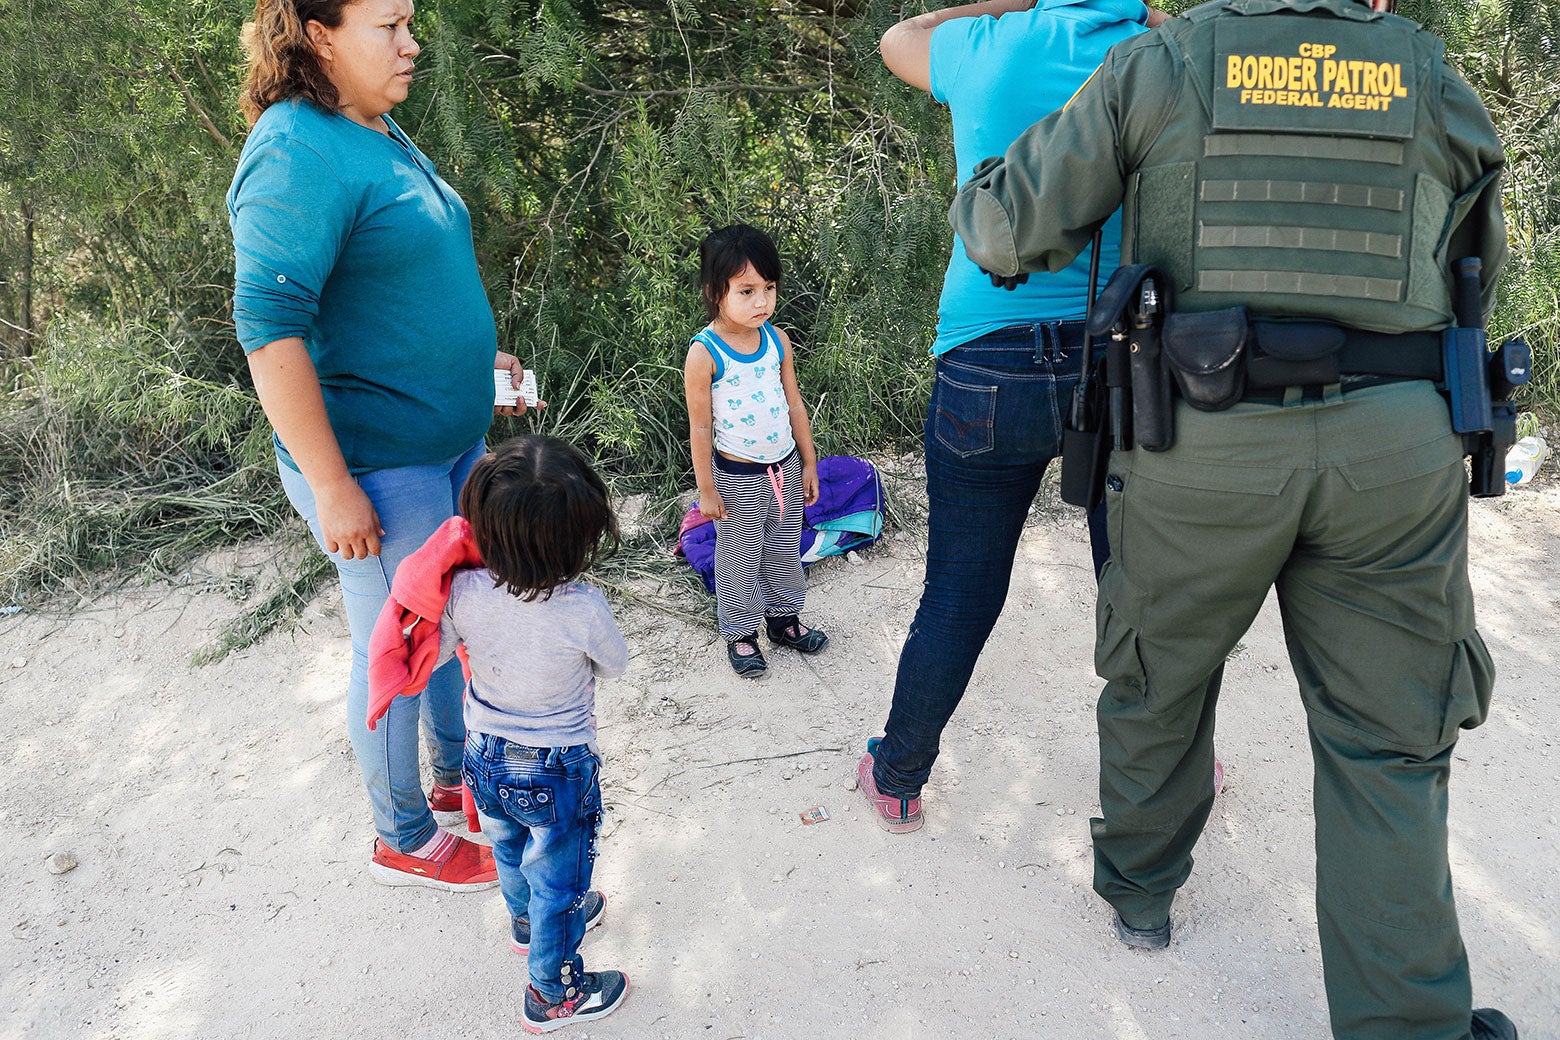 Little kids watch as Border Patrol agents take asylum seekers into custody